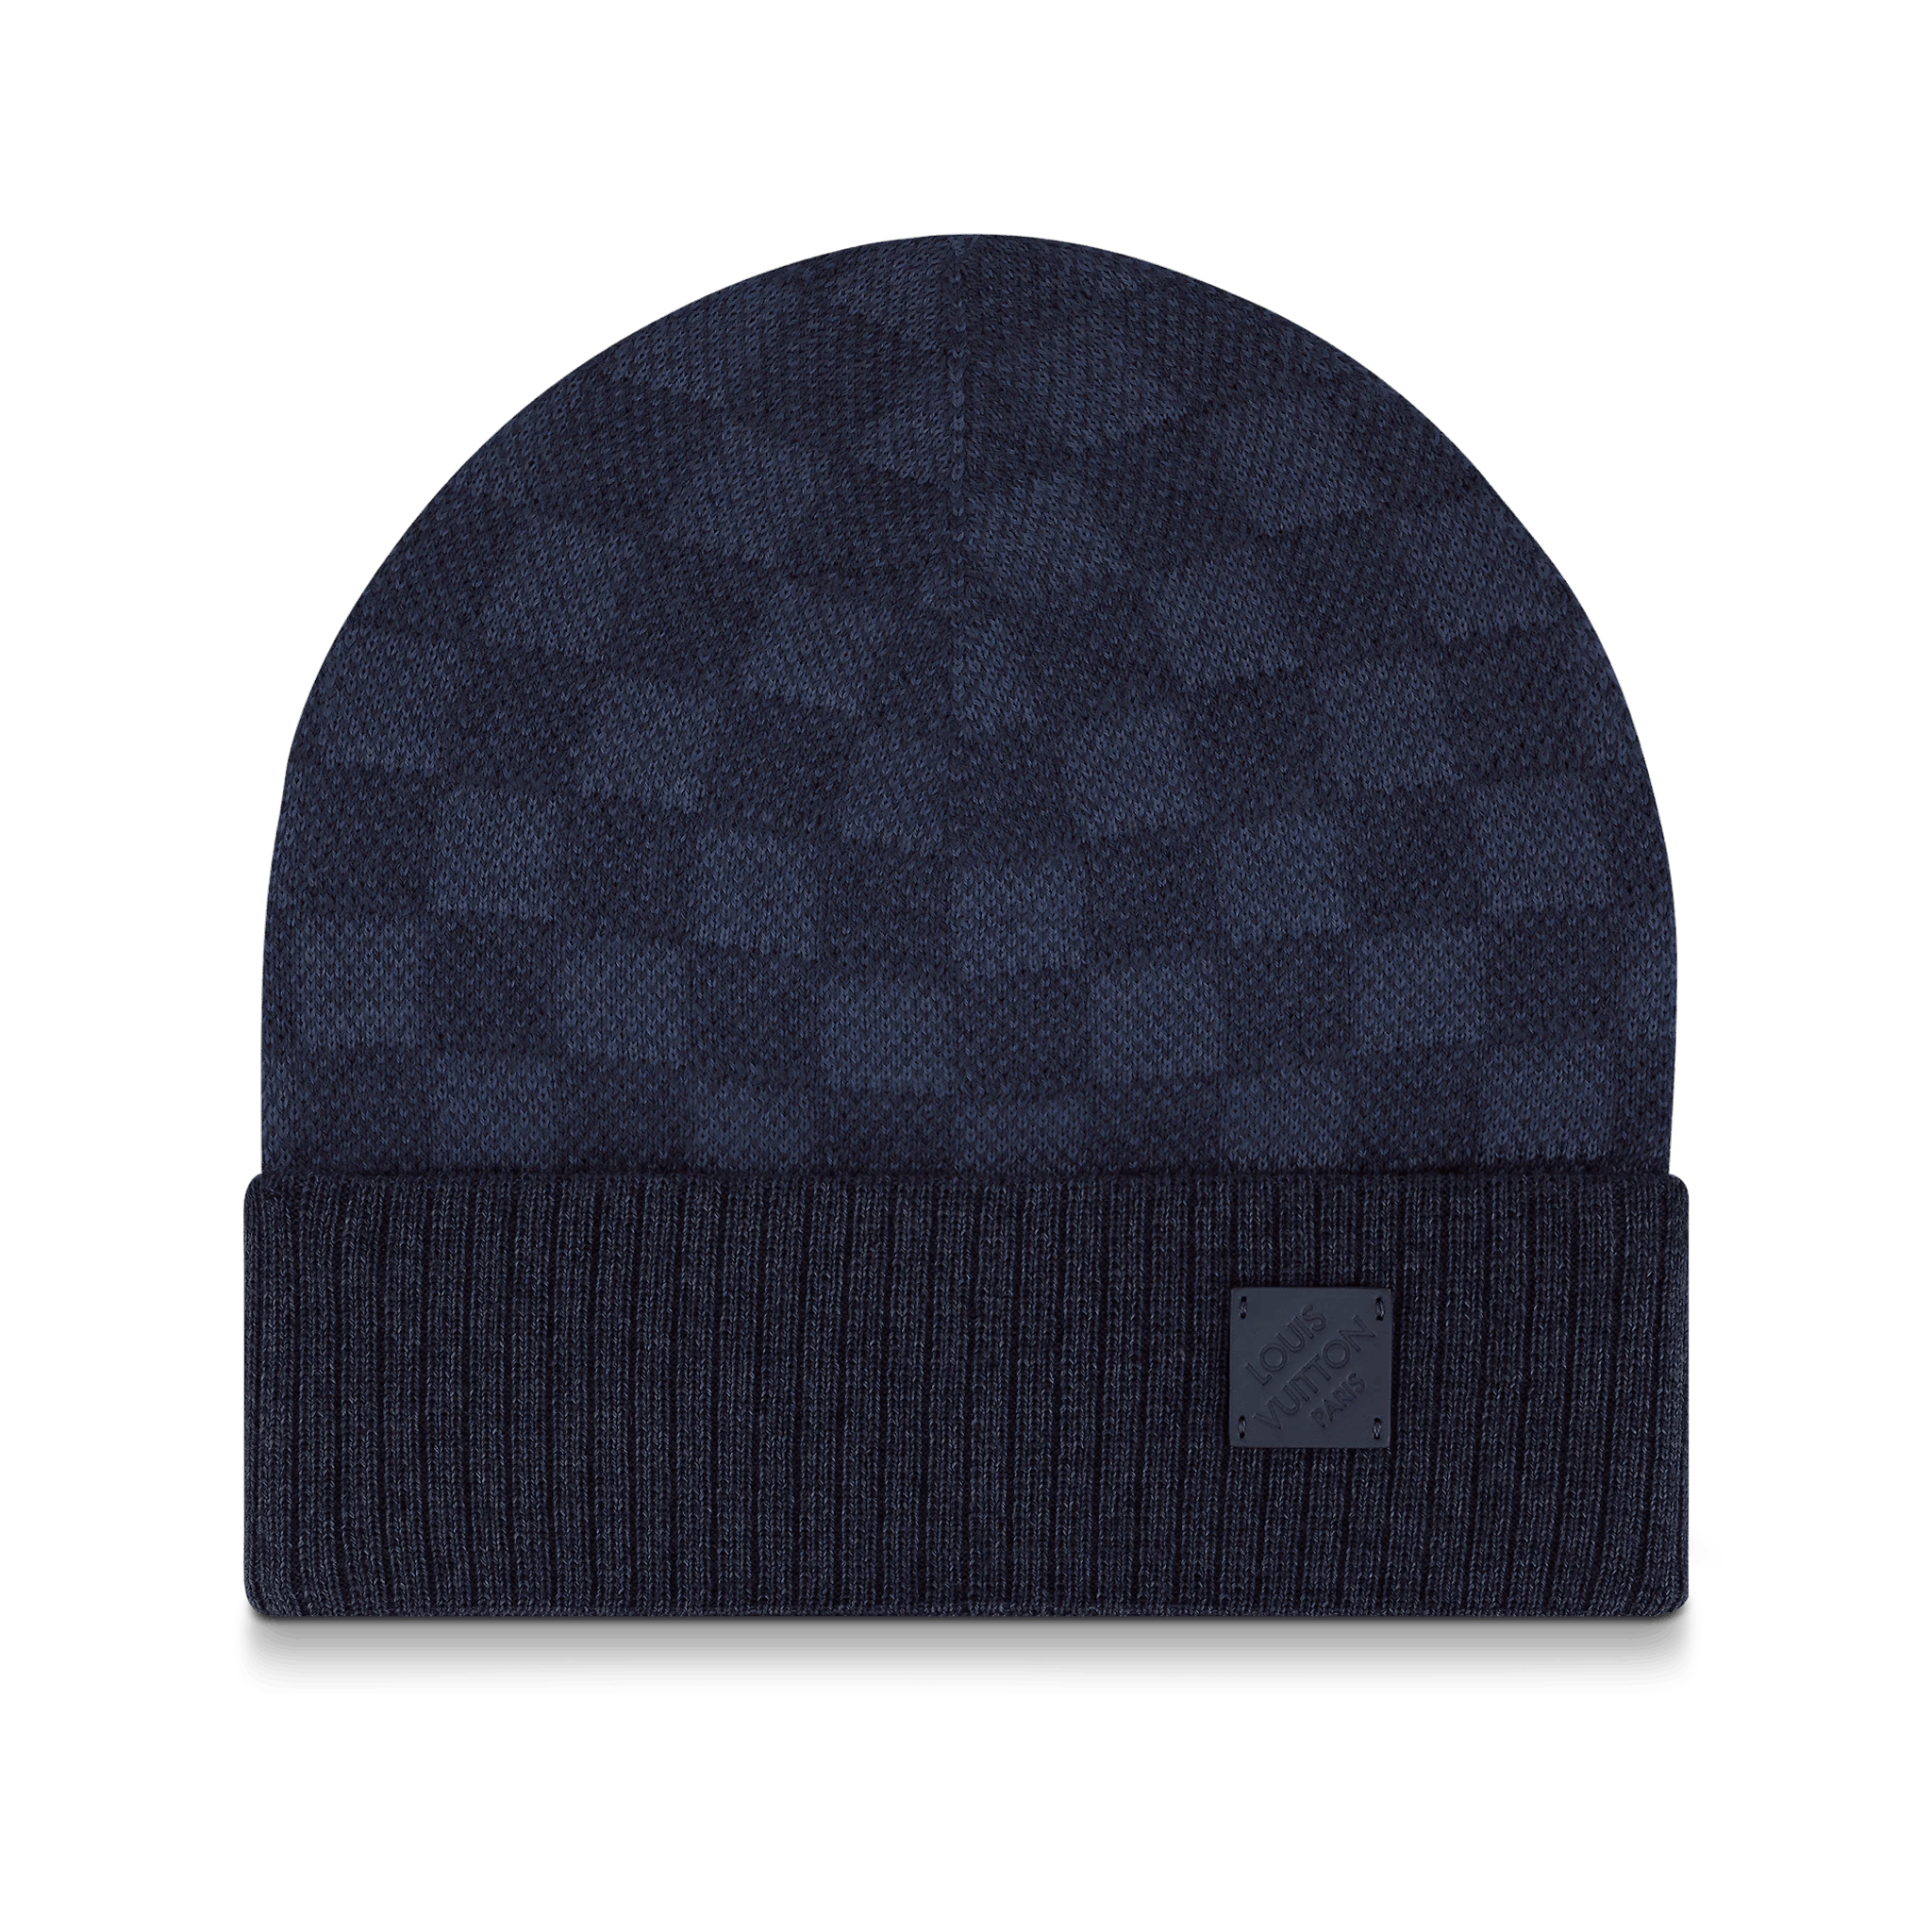 F/W 2018 Louis Vuitton Alps Damier Monogram Beanie Hat